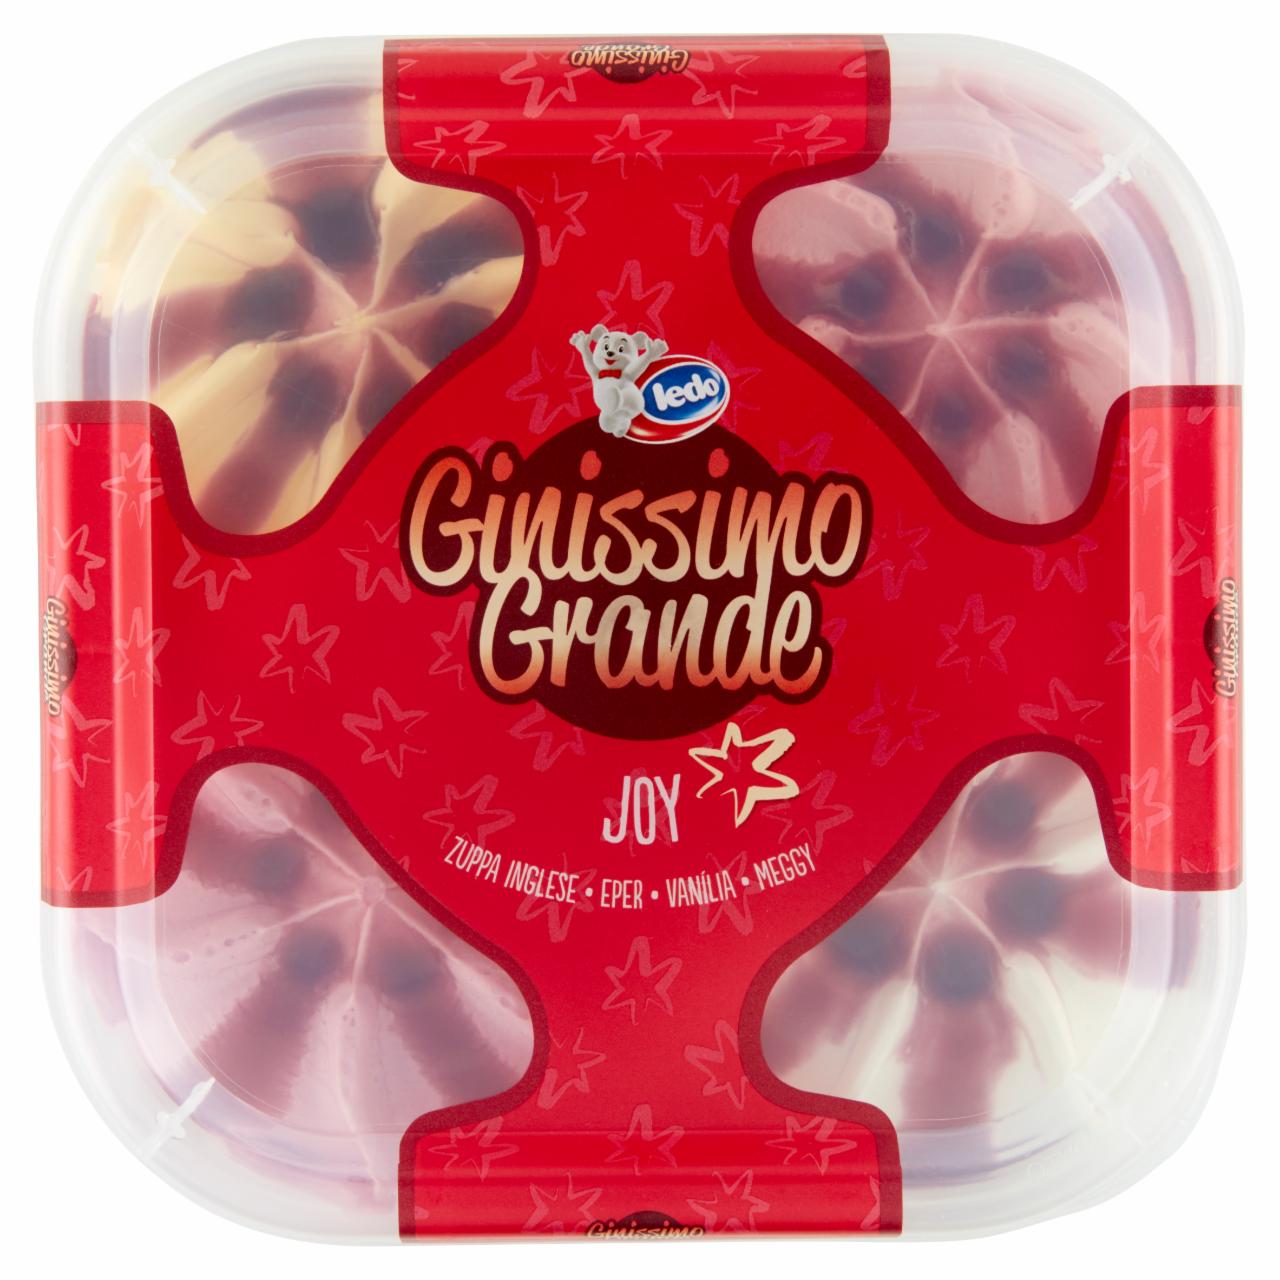 Képek - Ledo Ginissimo Grande Joy eperízű, vaníliaízű, zuppa inglese ízű és meggyízű jégkrém 1650 ml